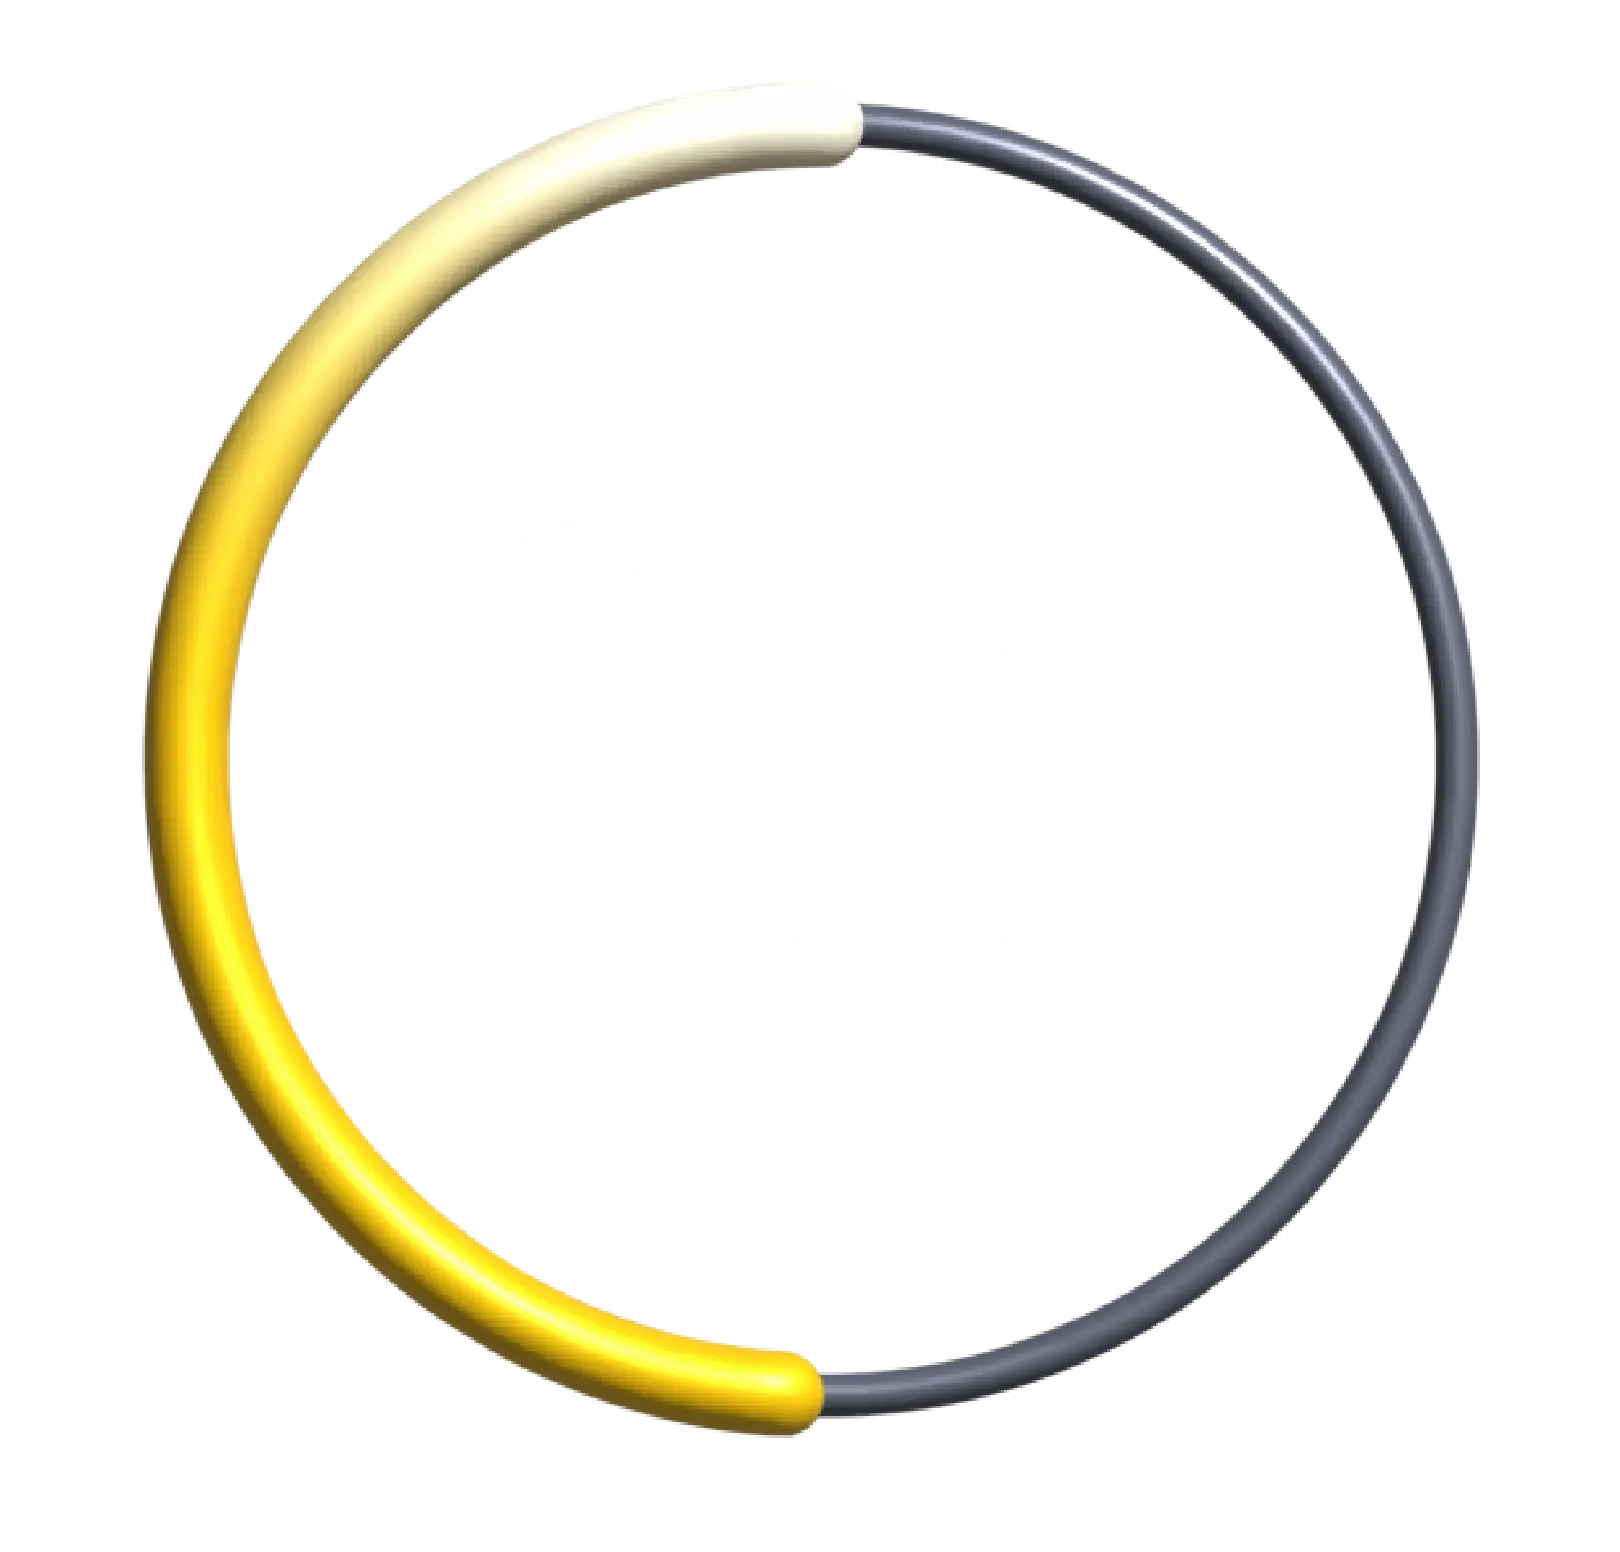 Swiss Canyon Trail 81K trail logo